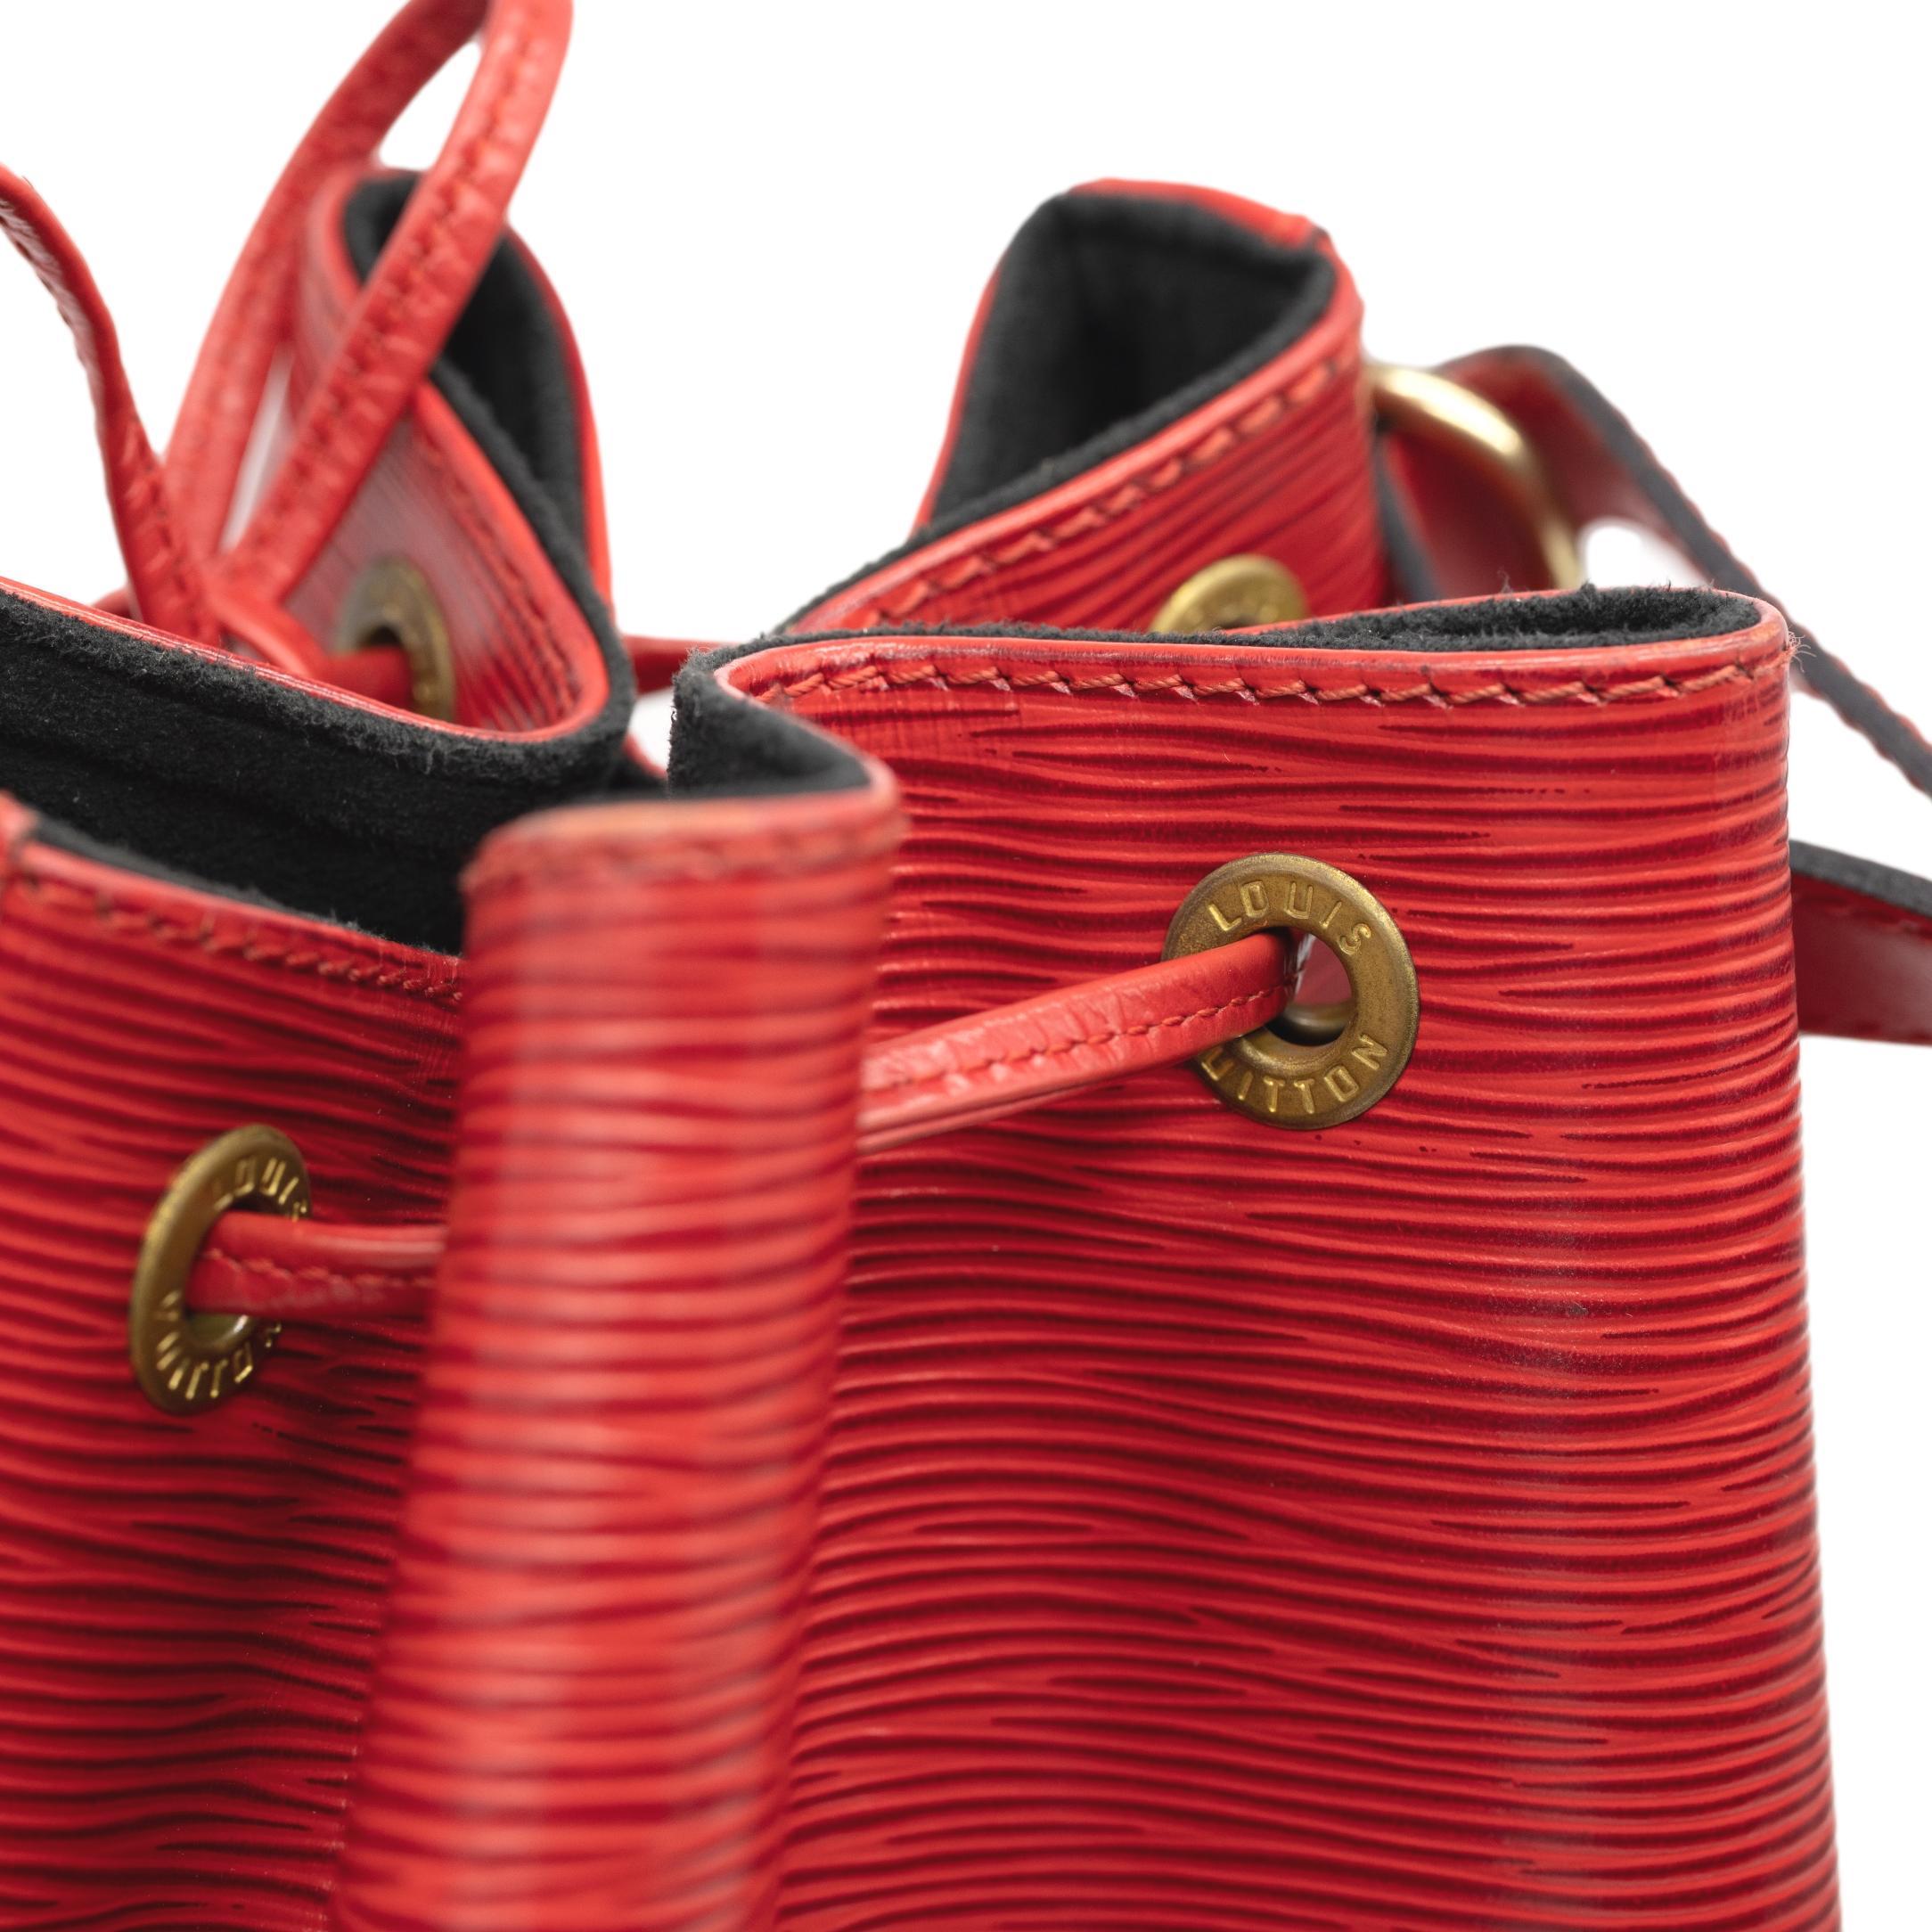 Louis Vuitton “Noe” PM Bucket Bag in Red EPI Leather Shoulder Bag, France 1993. 4